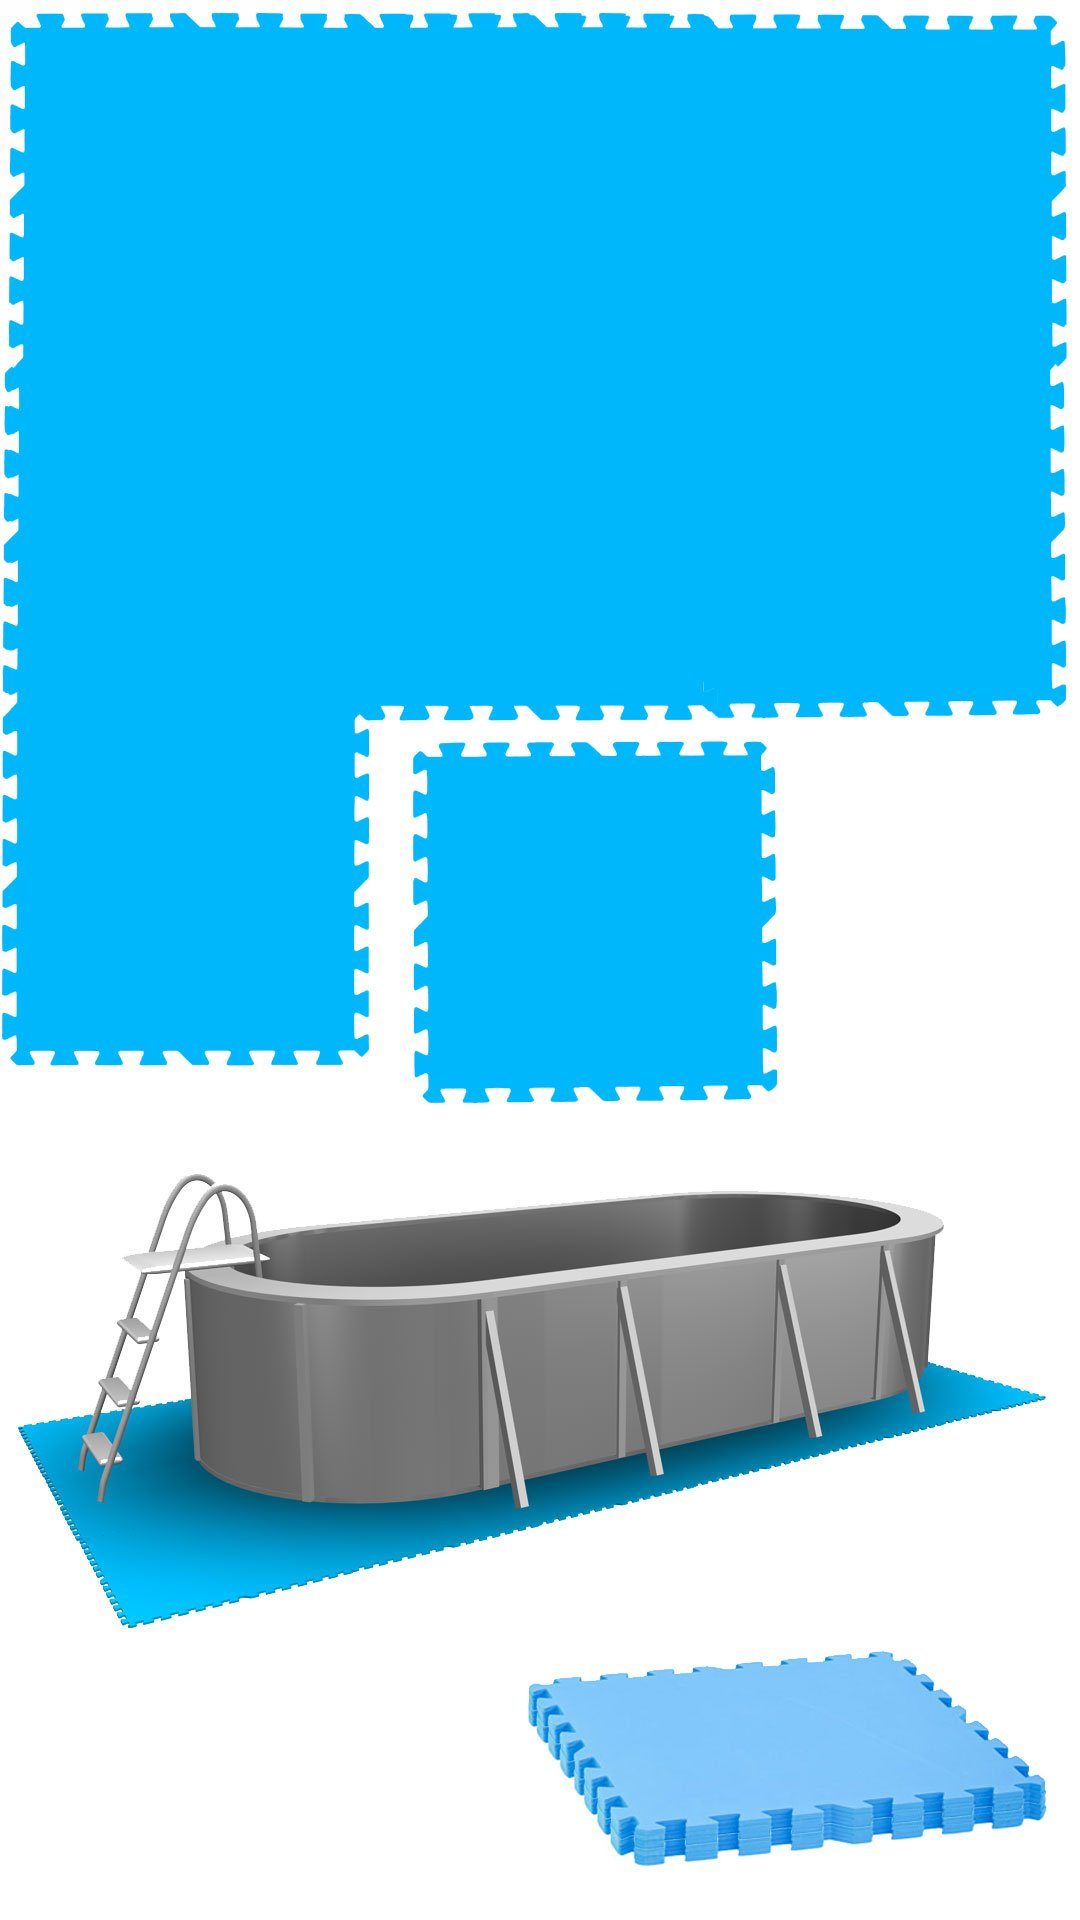 Pool - Outdoor Poolunterlage Bodenschutzmatte Poolmatten Bodenmatte 8 - 1,9m² Große 50x50cm, eyepower